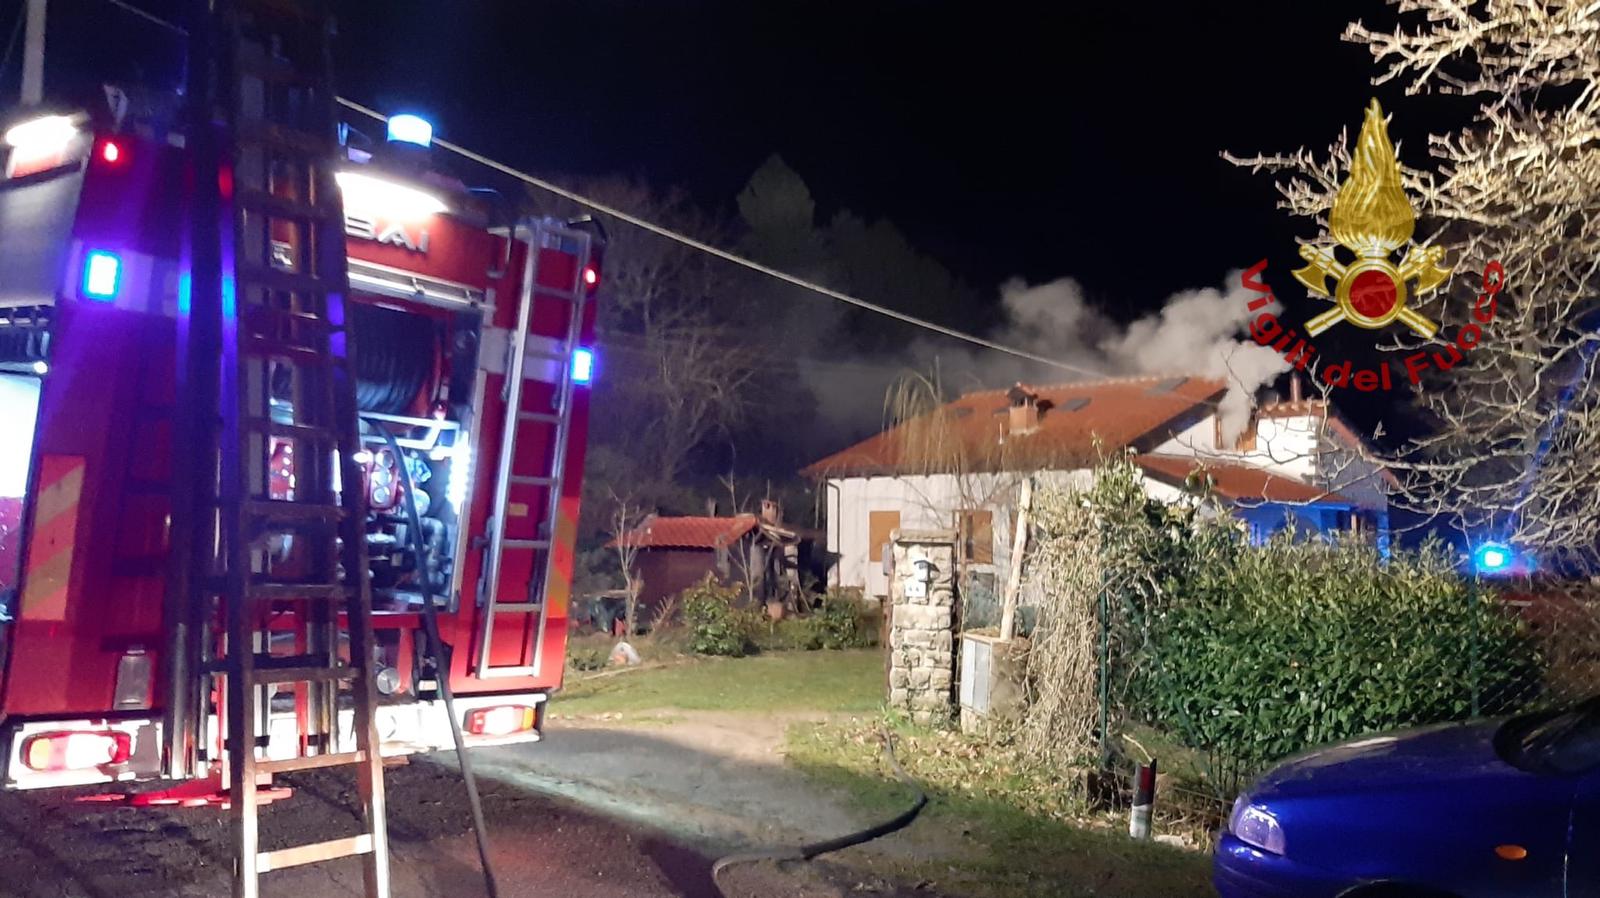 Incendio in una mansarda, lievemente ferito il proprietario dell’abitazione